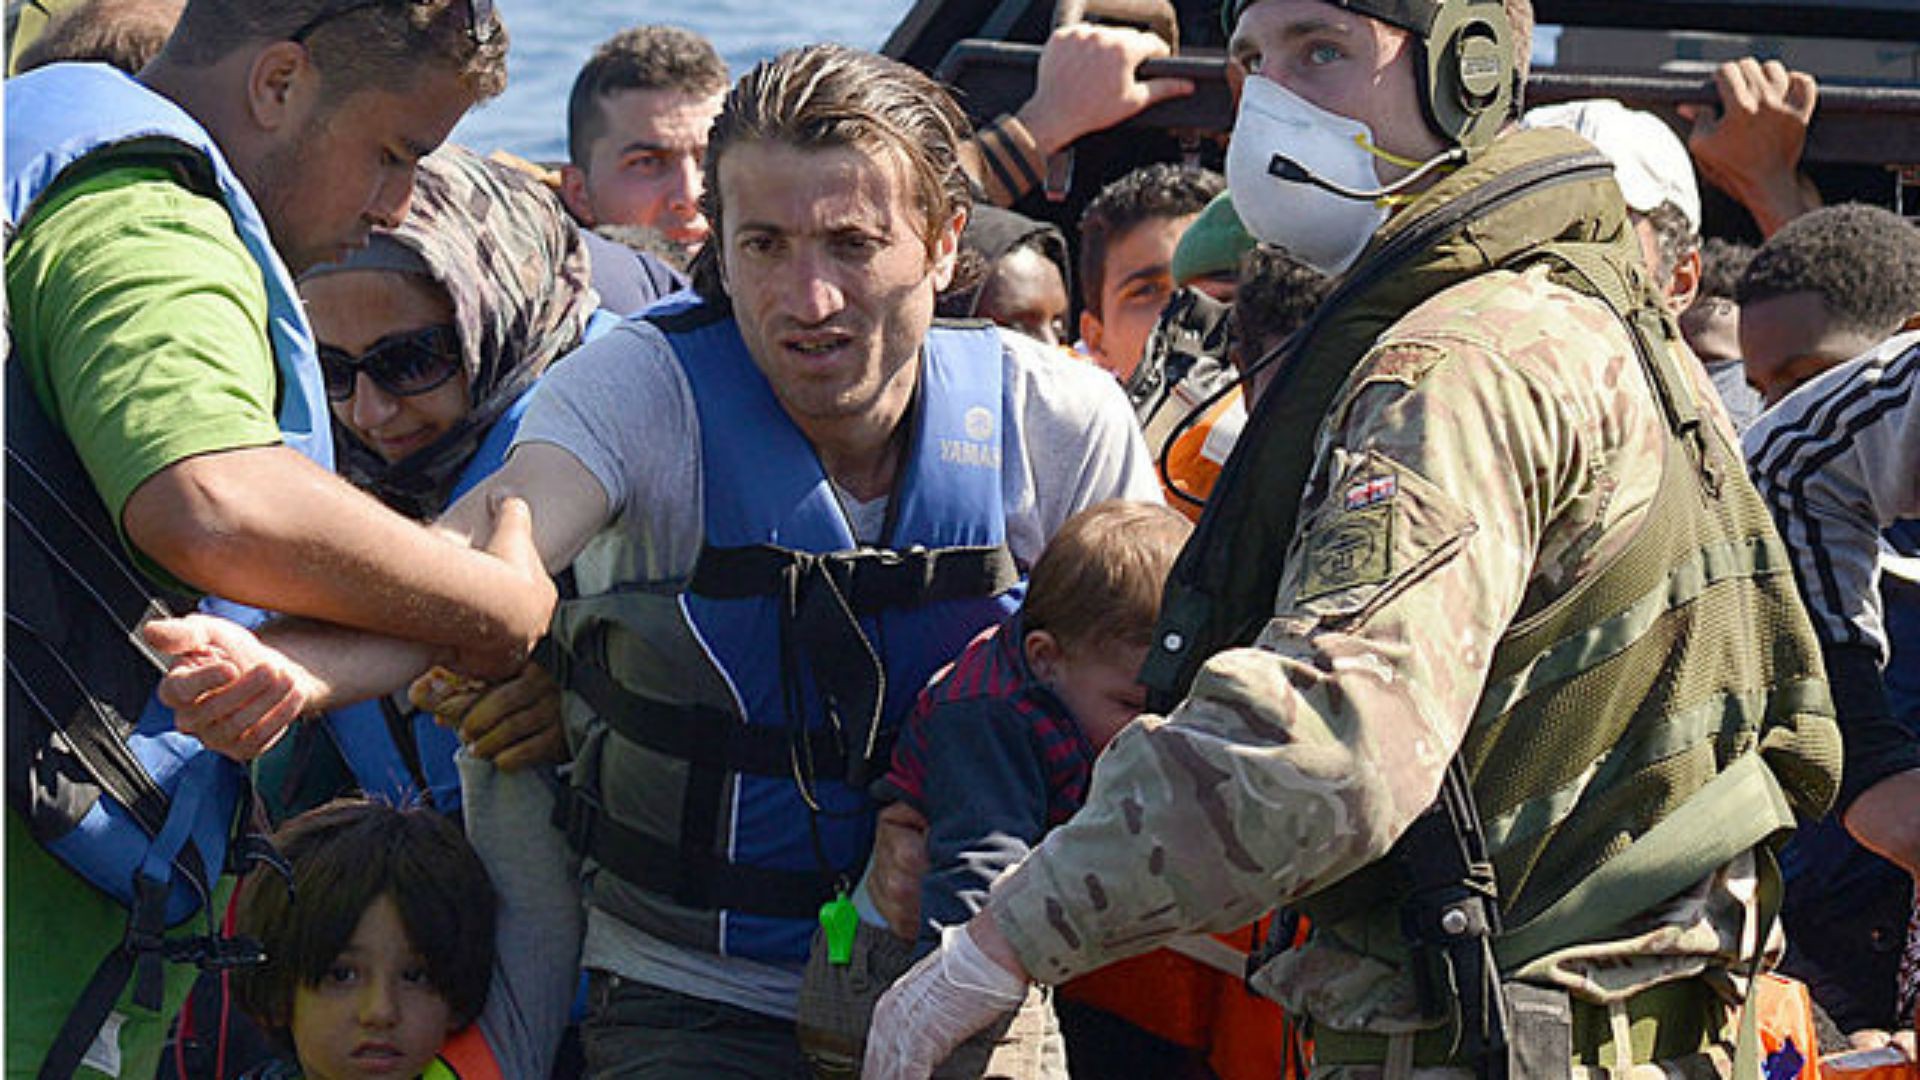 Réfugiés arrivant sur les côtes italiennes. (photo: Flickr/rn_topten/CC BY-NC 2.0)